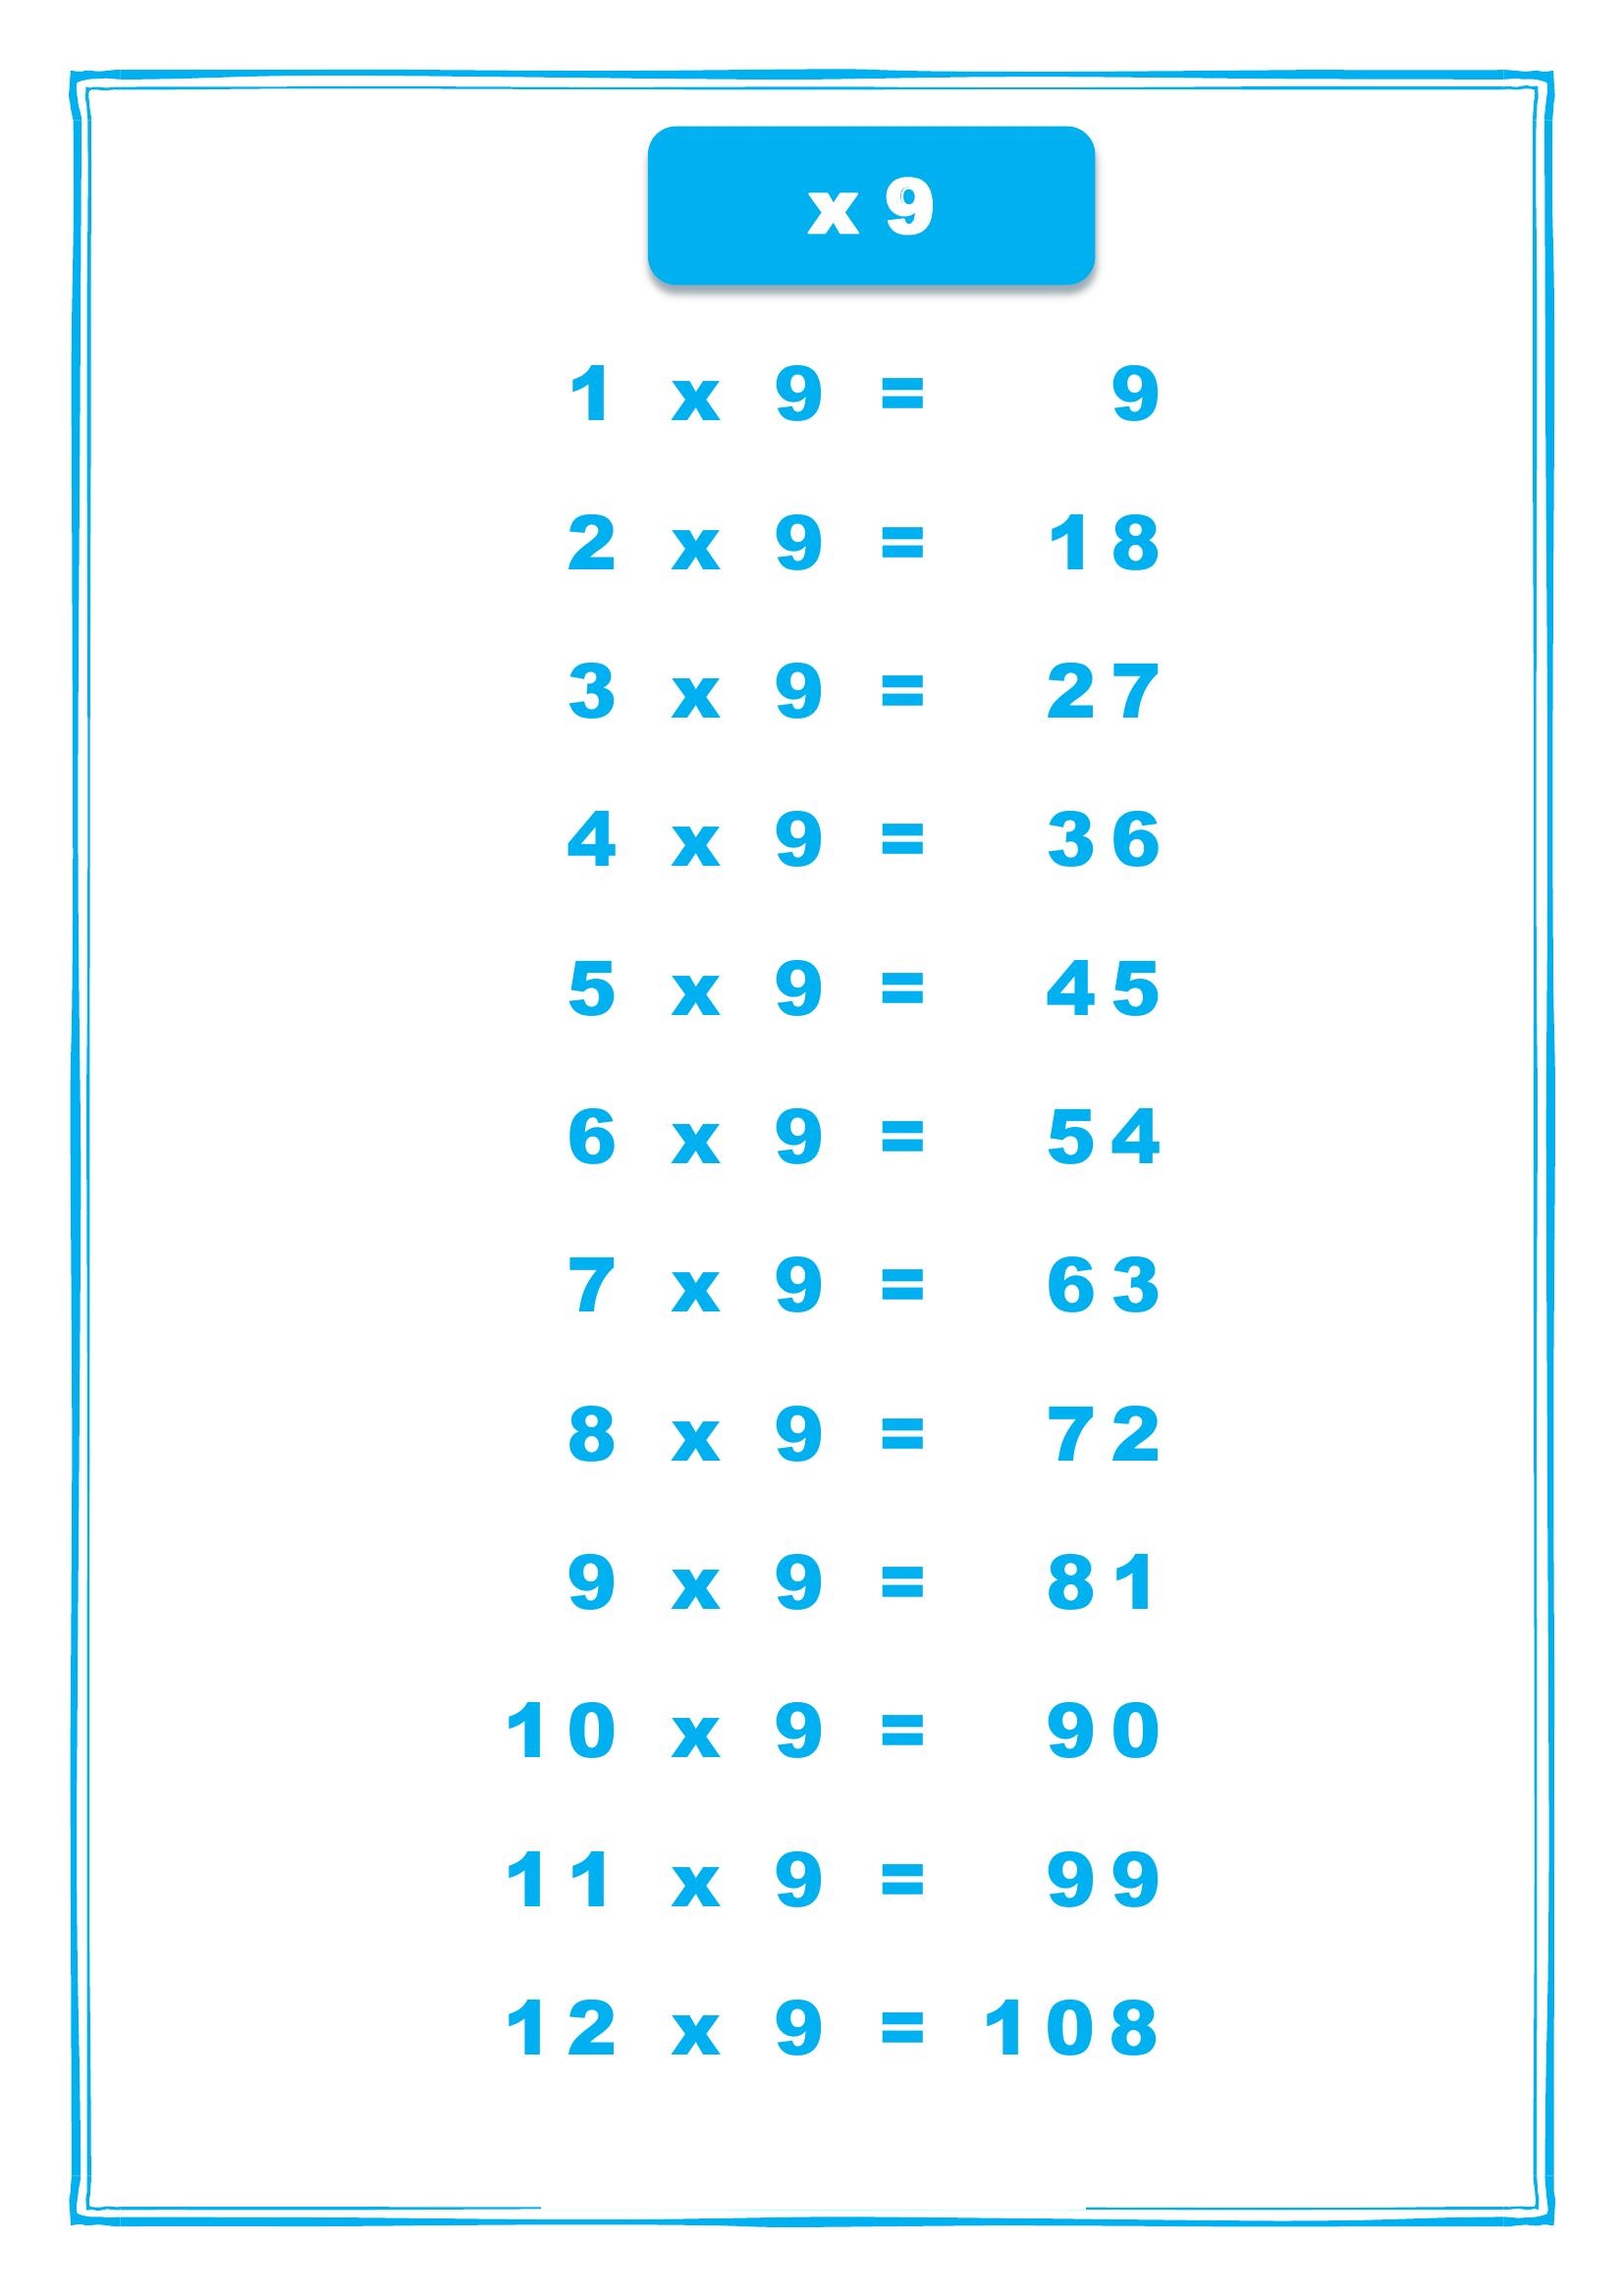 таблица умножения на 9